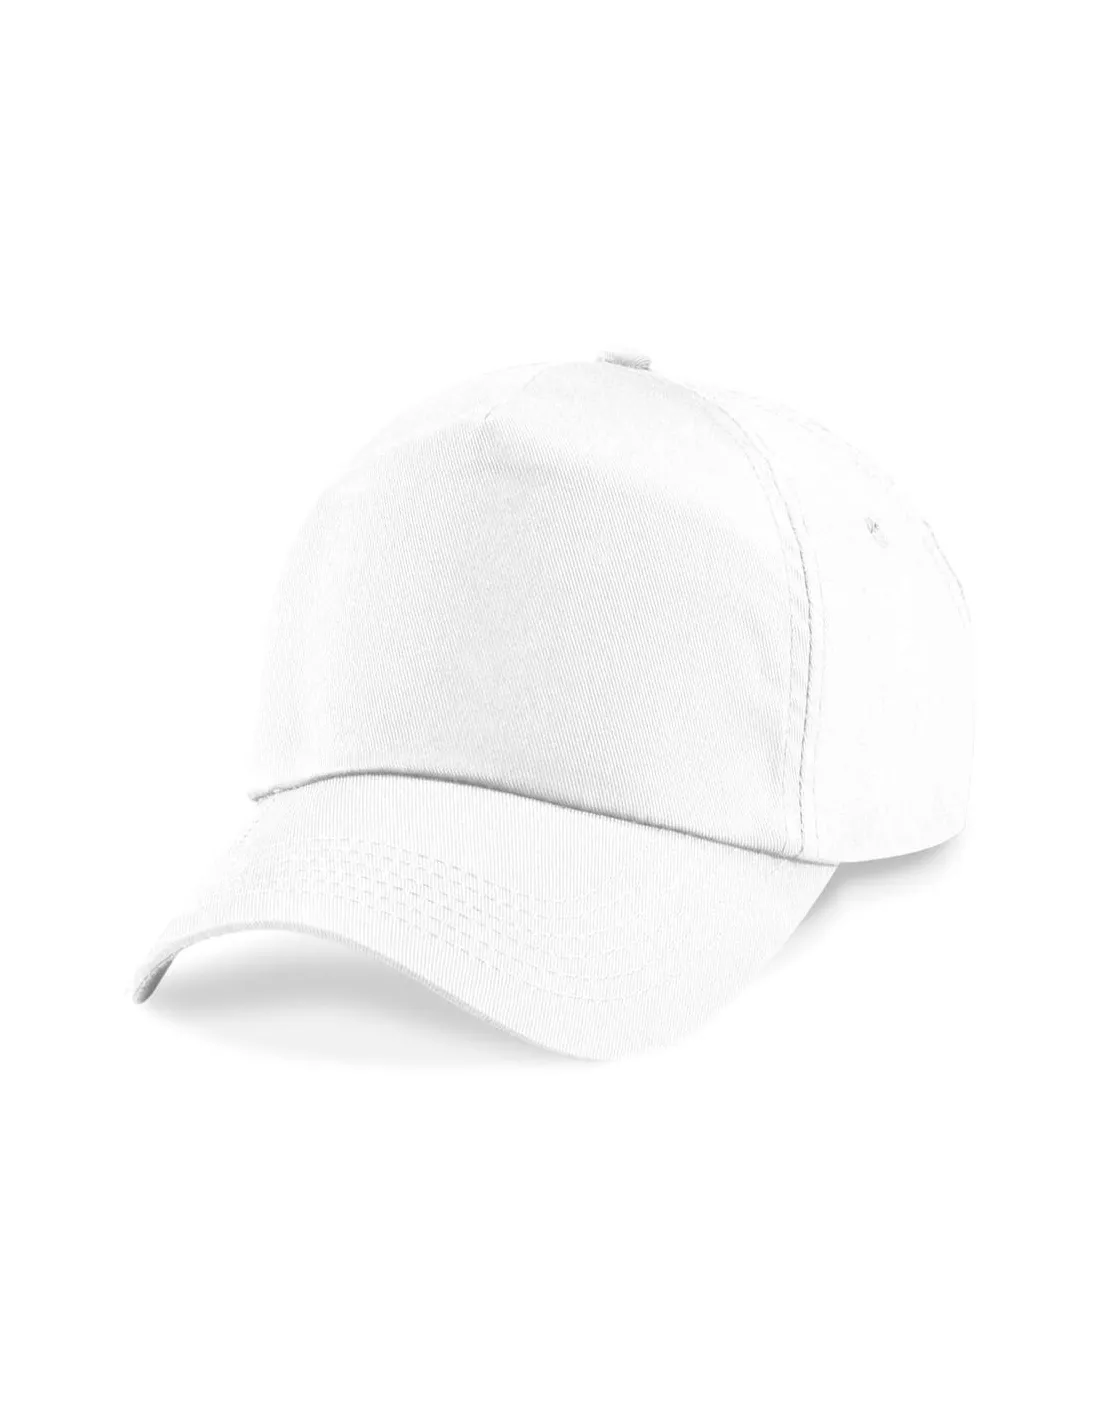 Gorra Beisbolera blanca personalizada con el bordado de tu empresa